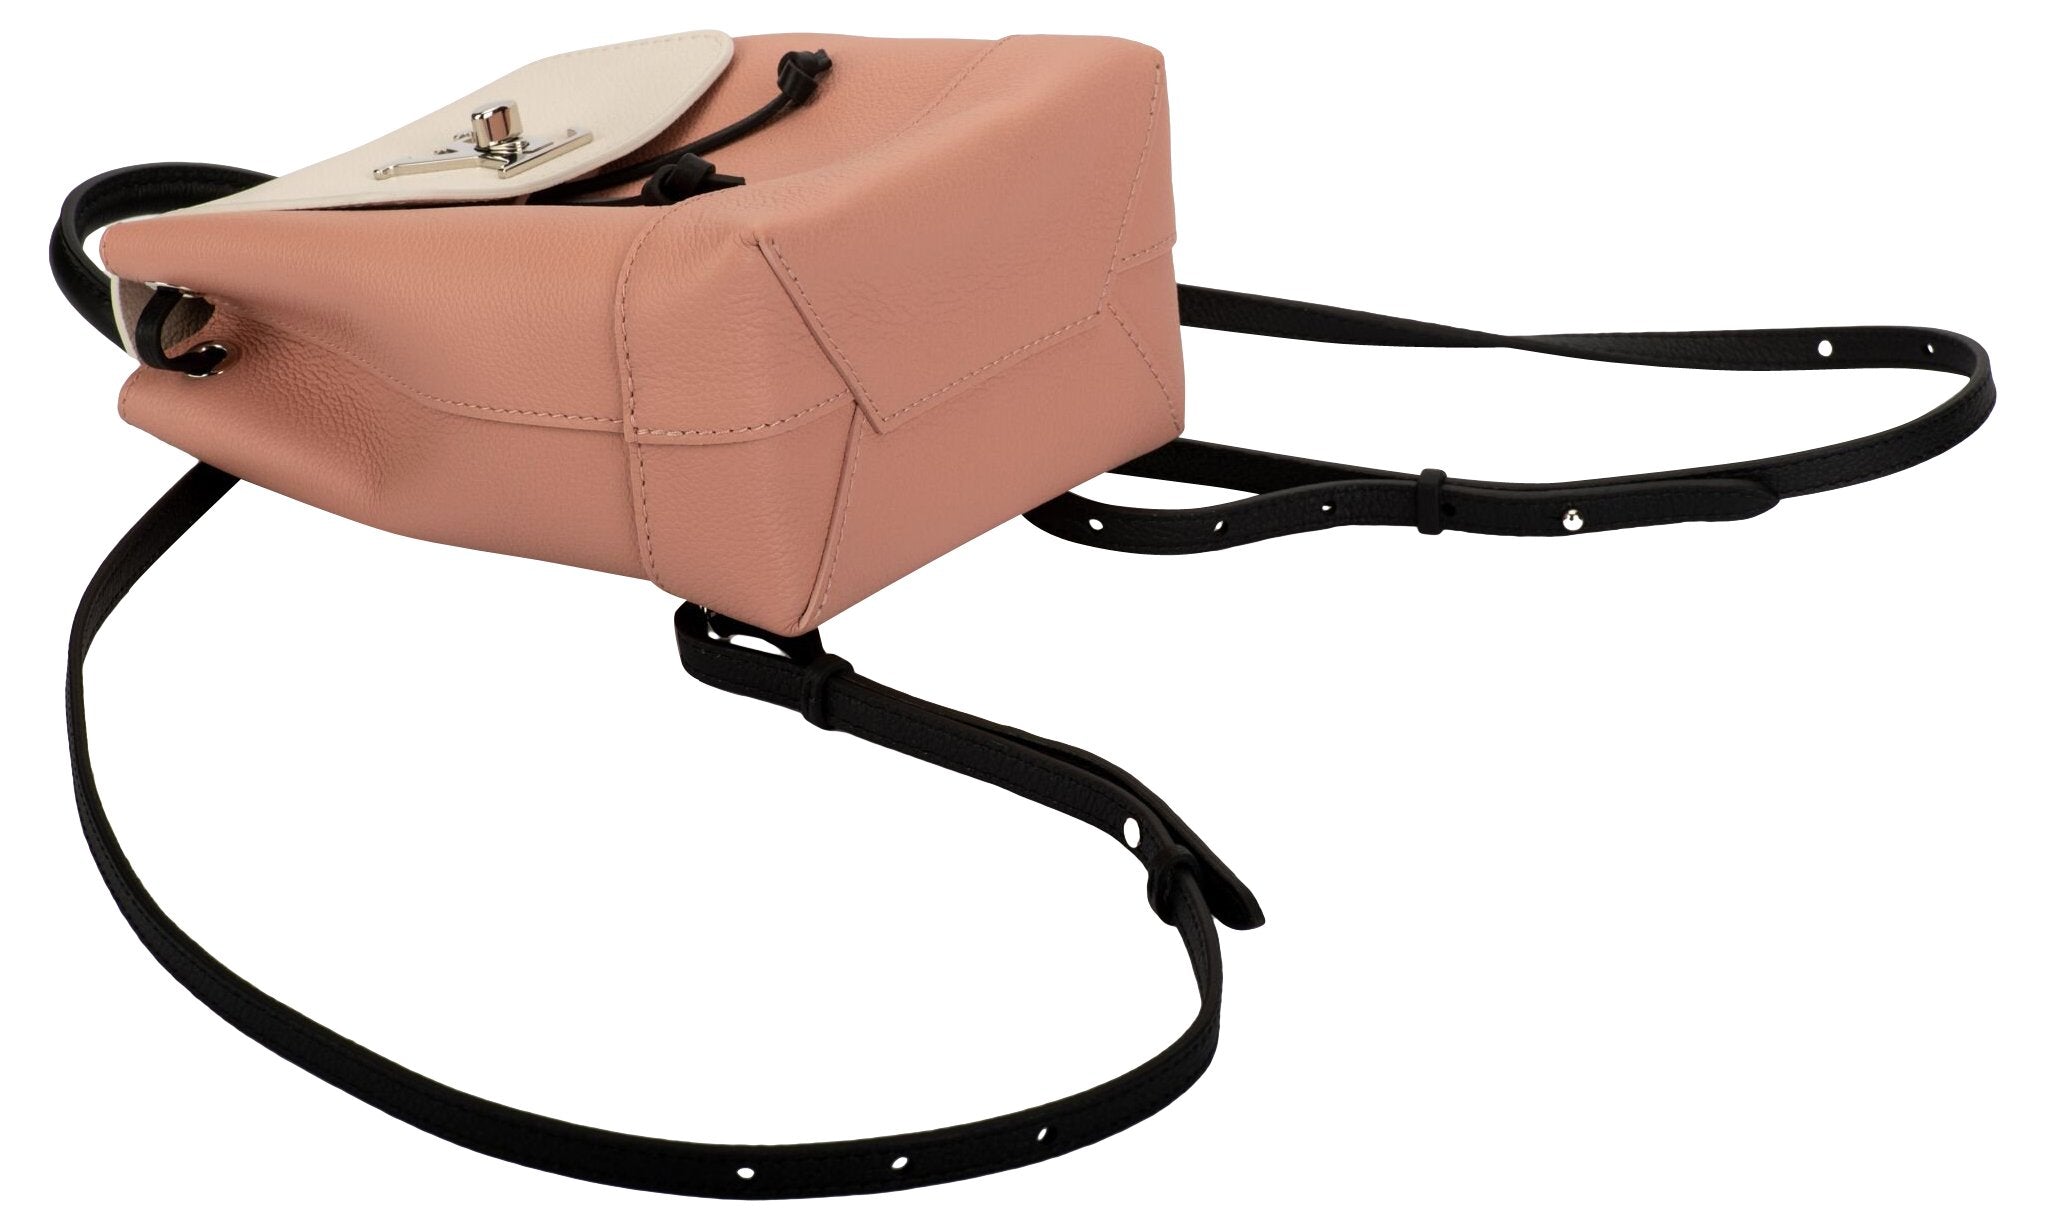 Louis Vuitton Lockme Backpack Rucksack Bag(Pink)